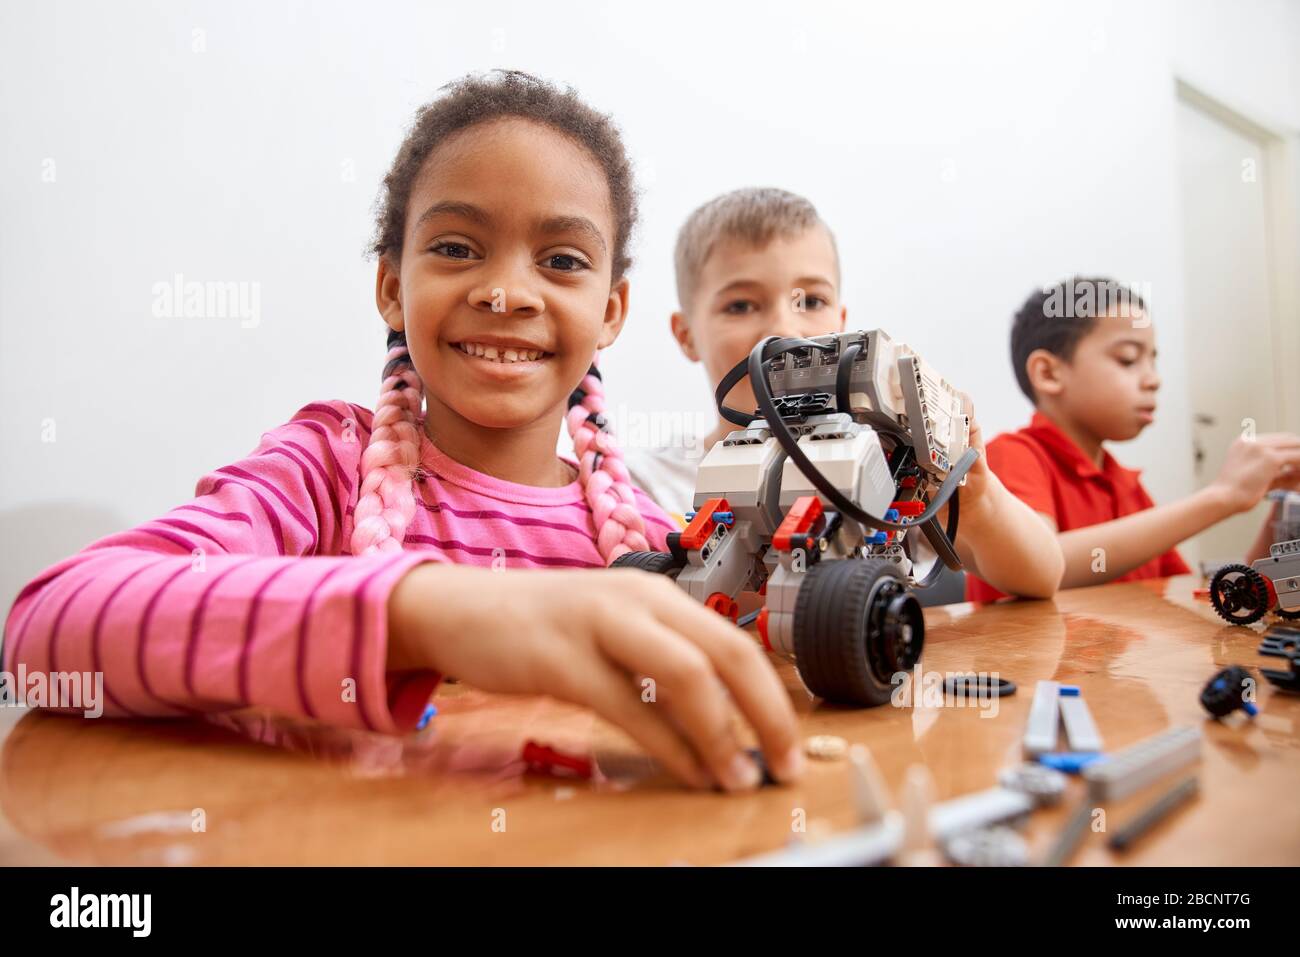 Vue de face de la trousse de construction pour le groupe de trois enfants multiraciaux créant des jouets, ayant des émotions positives et de la joie, fille africaine souriant et regardant ca Banque D'Images